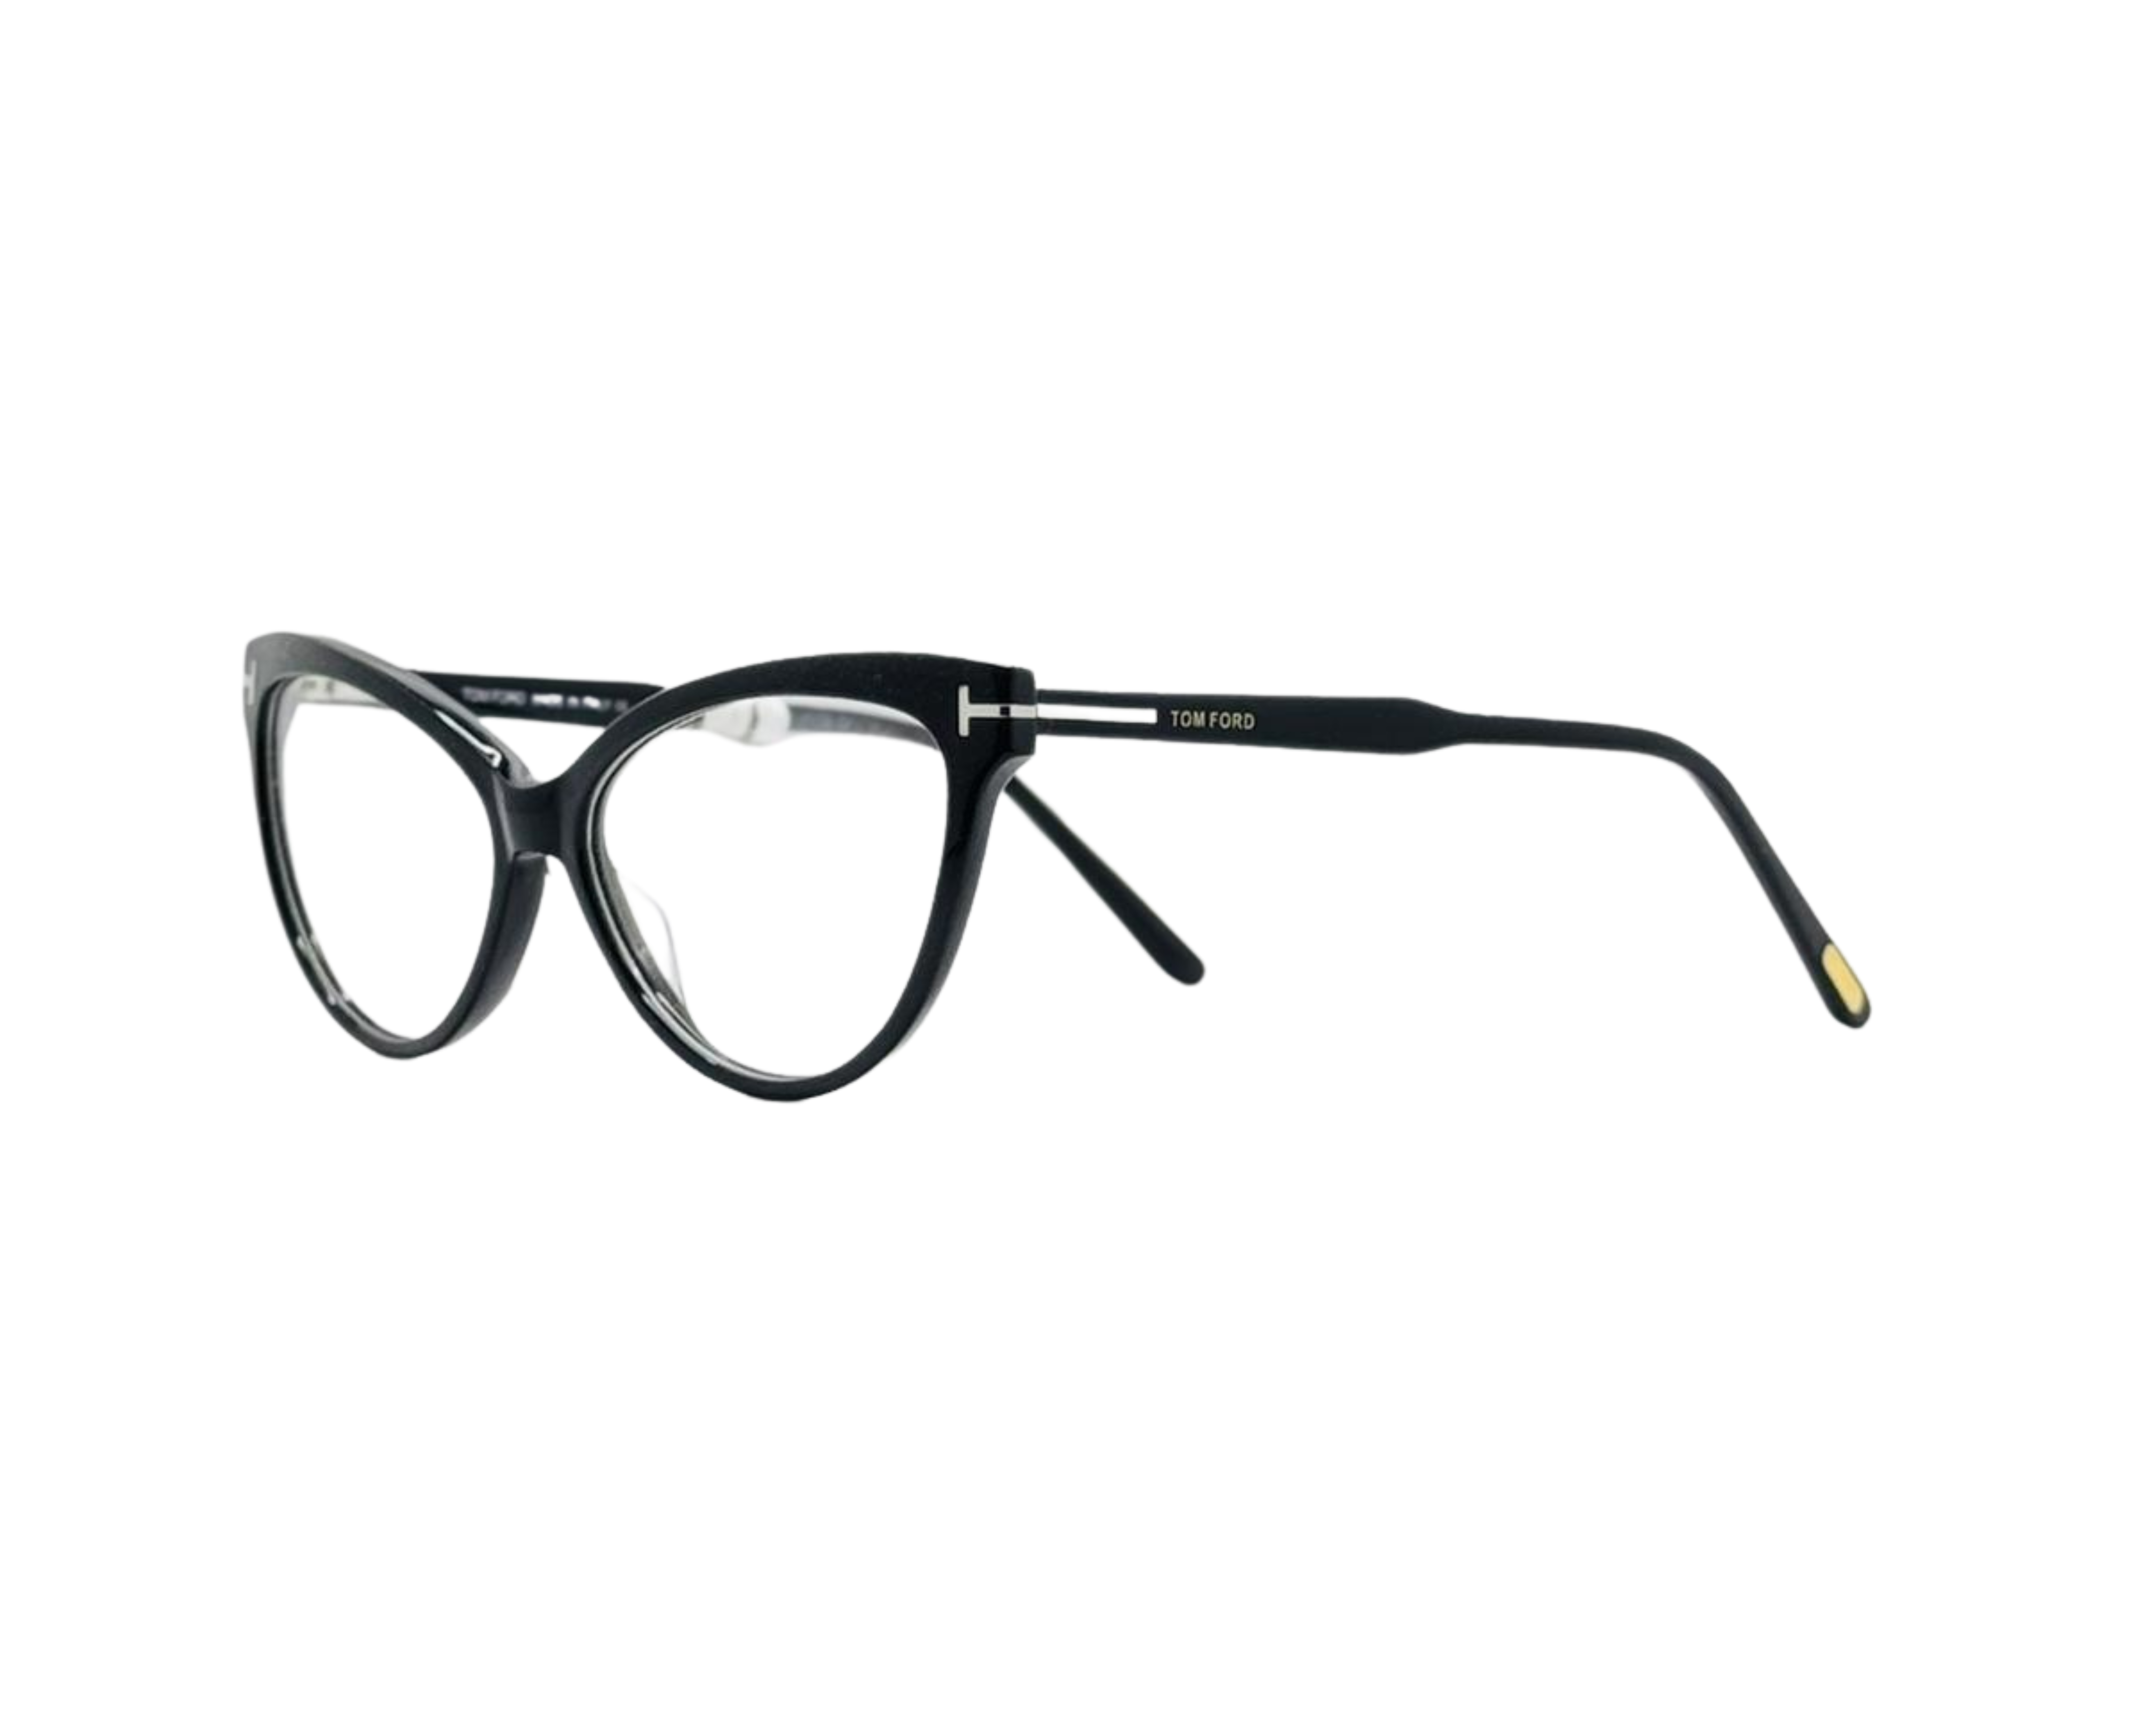 NS Luxury - J10 - Black - Eyeglasses